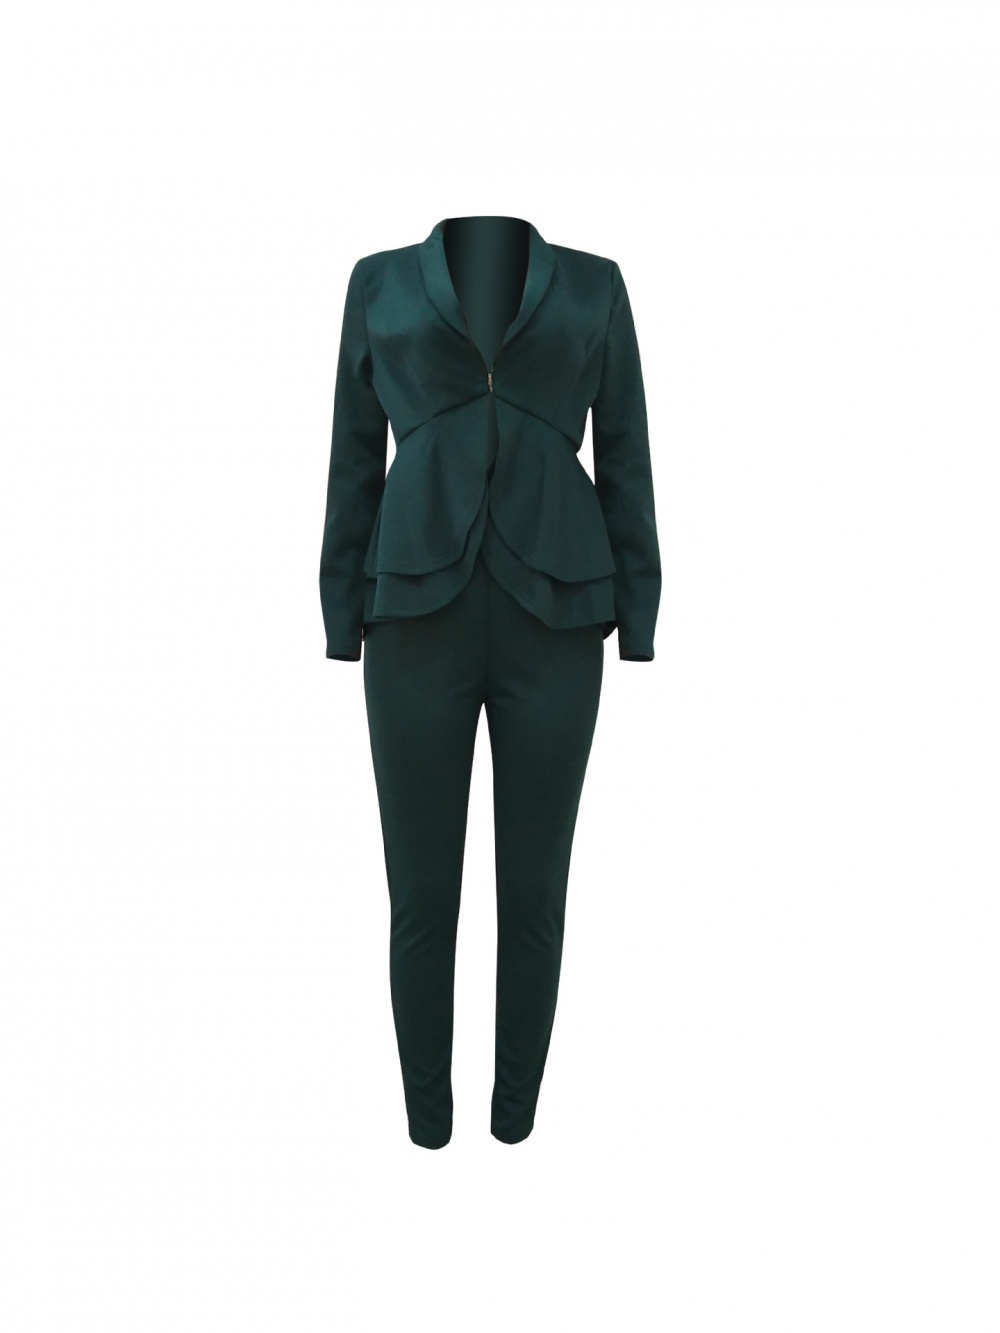 Business suit a set for women